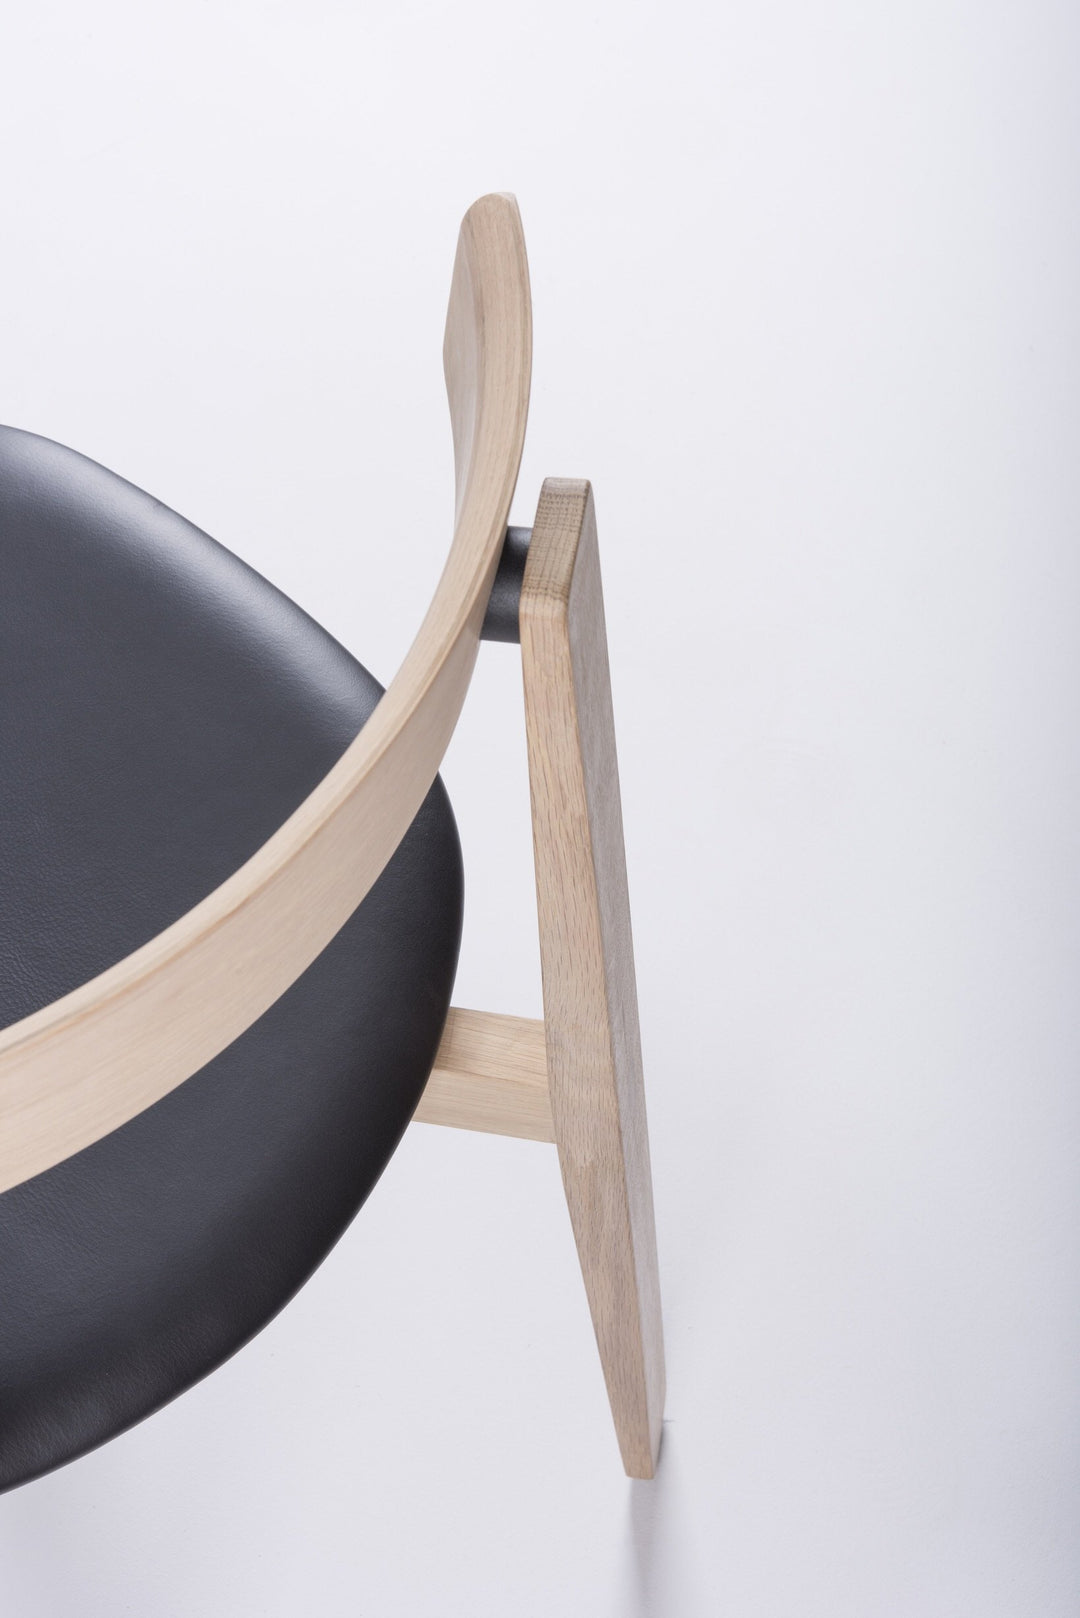 Gazzda Stuhl Black 0500 / Eiche weiß geölt 1015 NORA Stuhl aus massiver Eiche mit Lederbezug - 2 Stühle / 470€ pro Stuhl